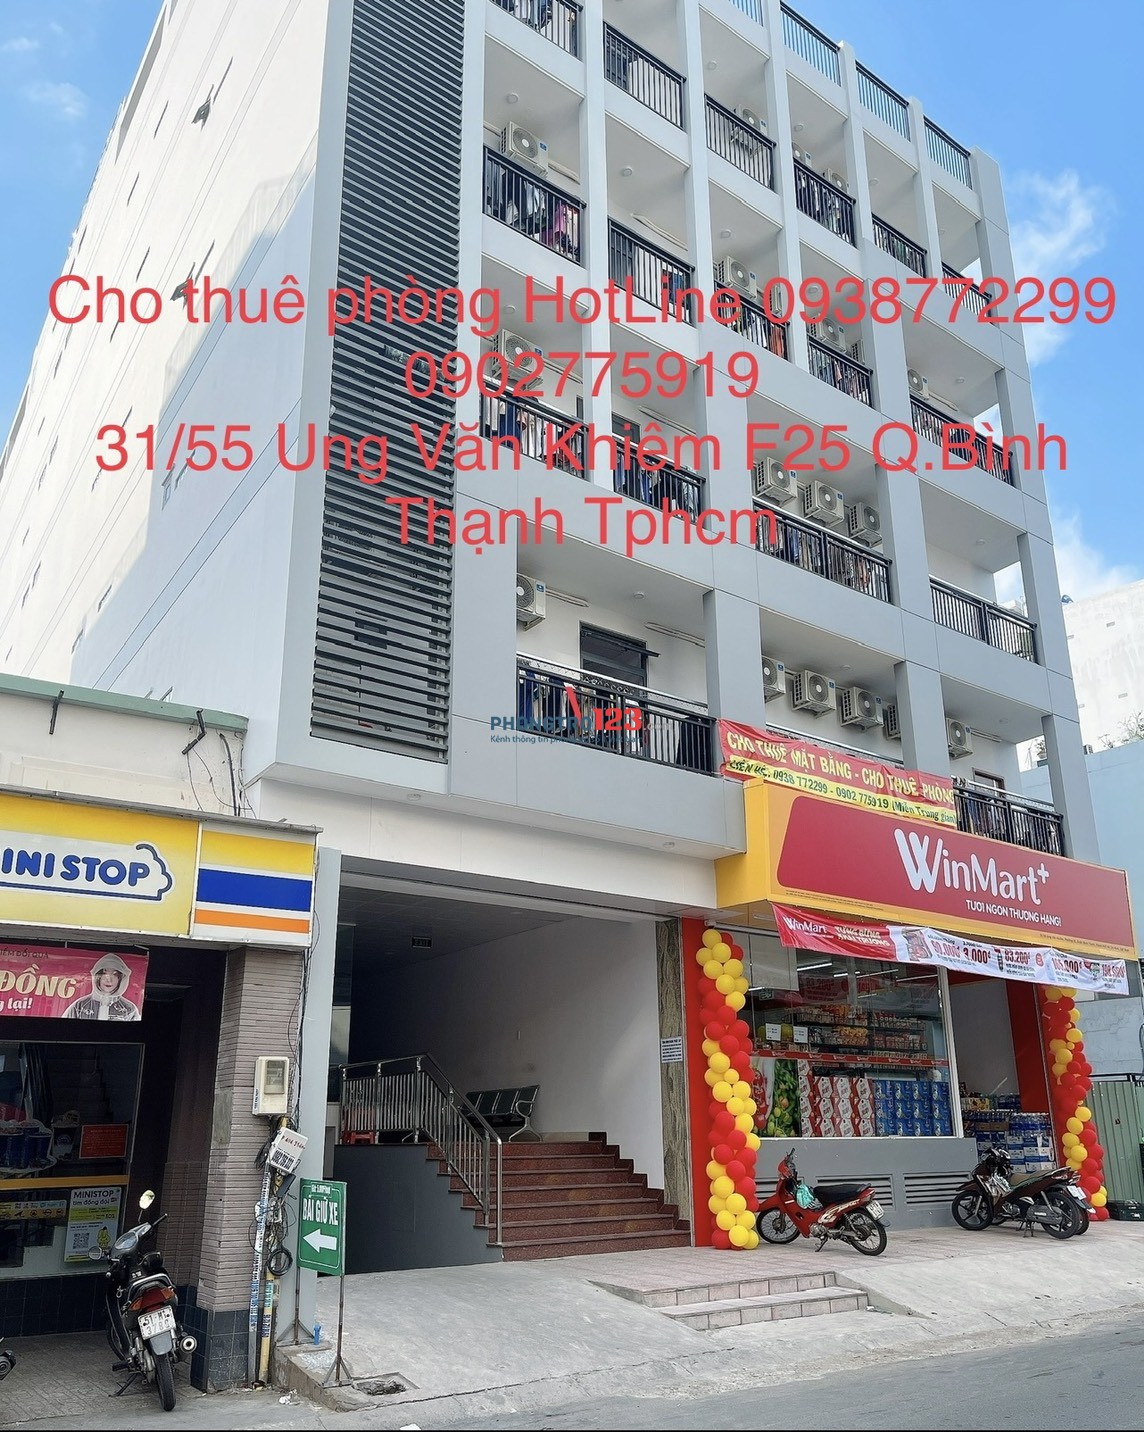 Cho thuê phòng đối diện đại học hutech Ung Văn Khiêm HotLine 0938772299 - 0902775919